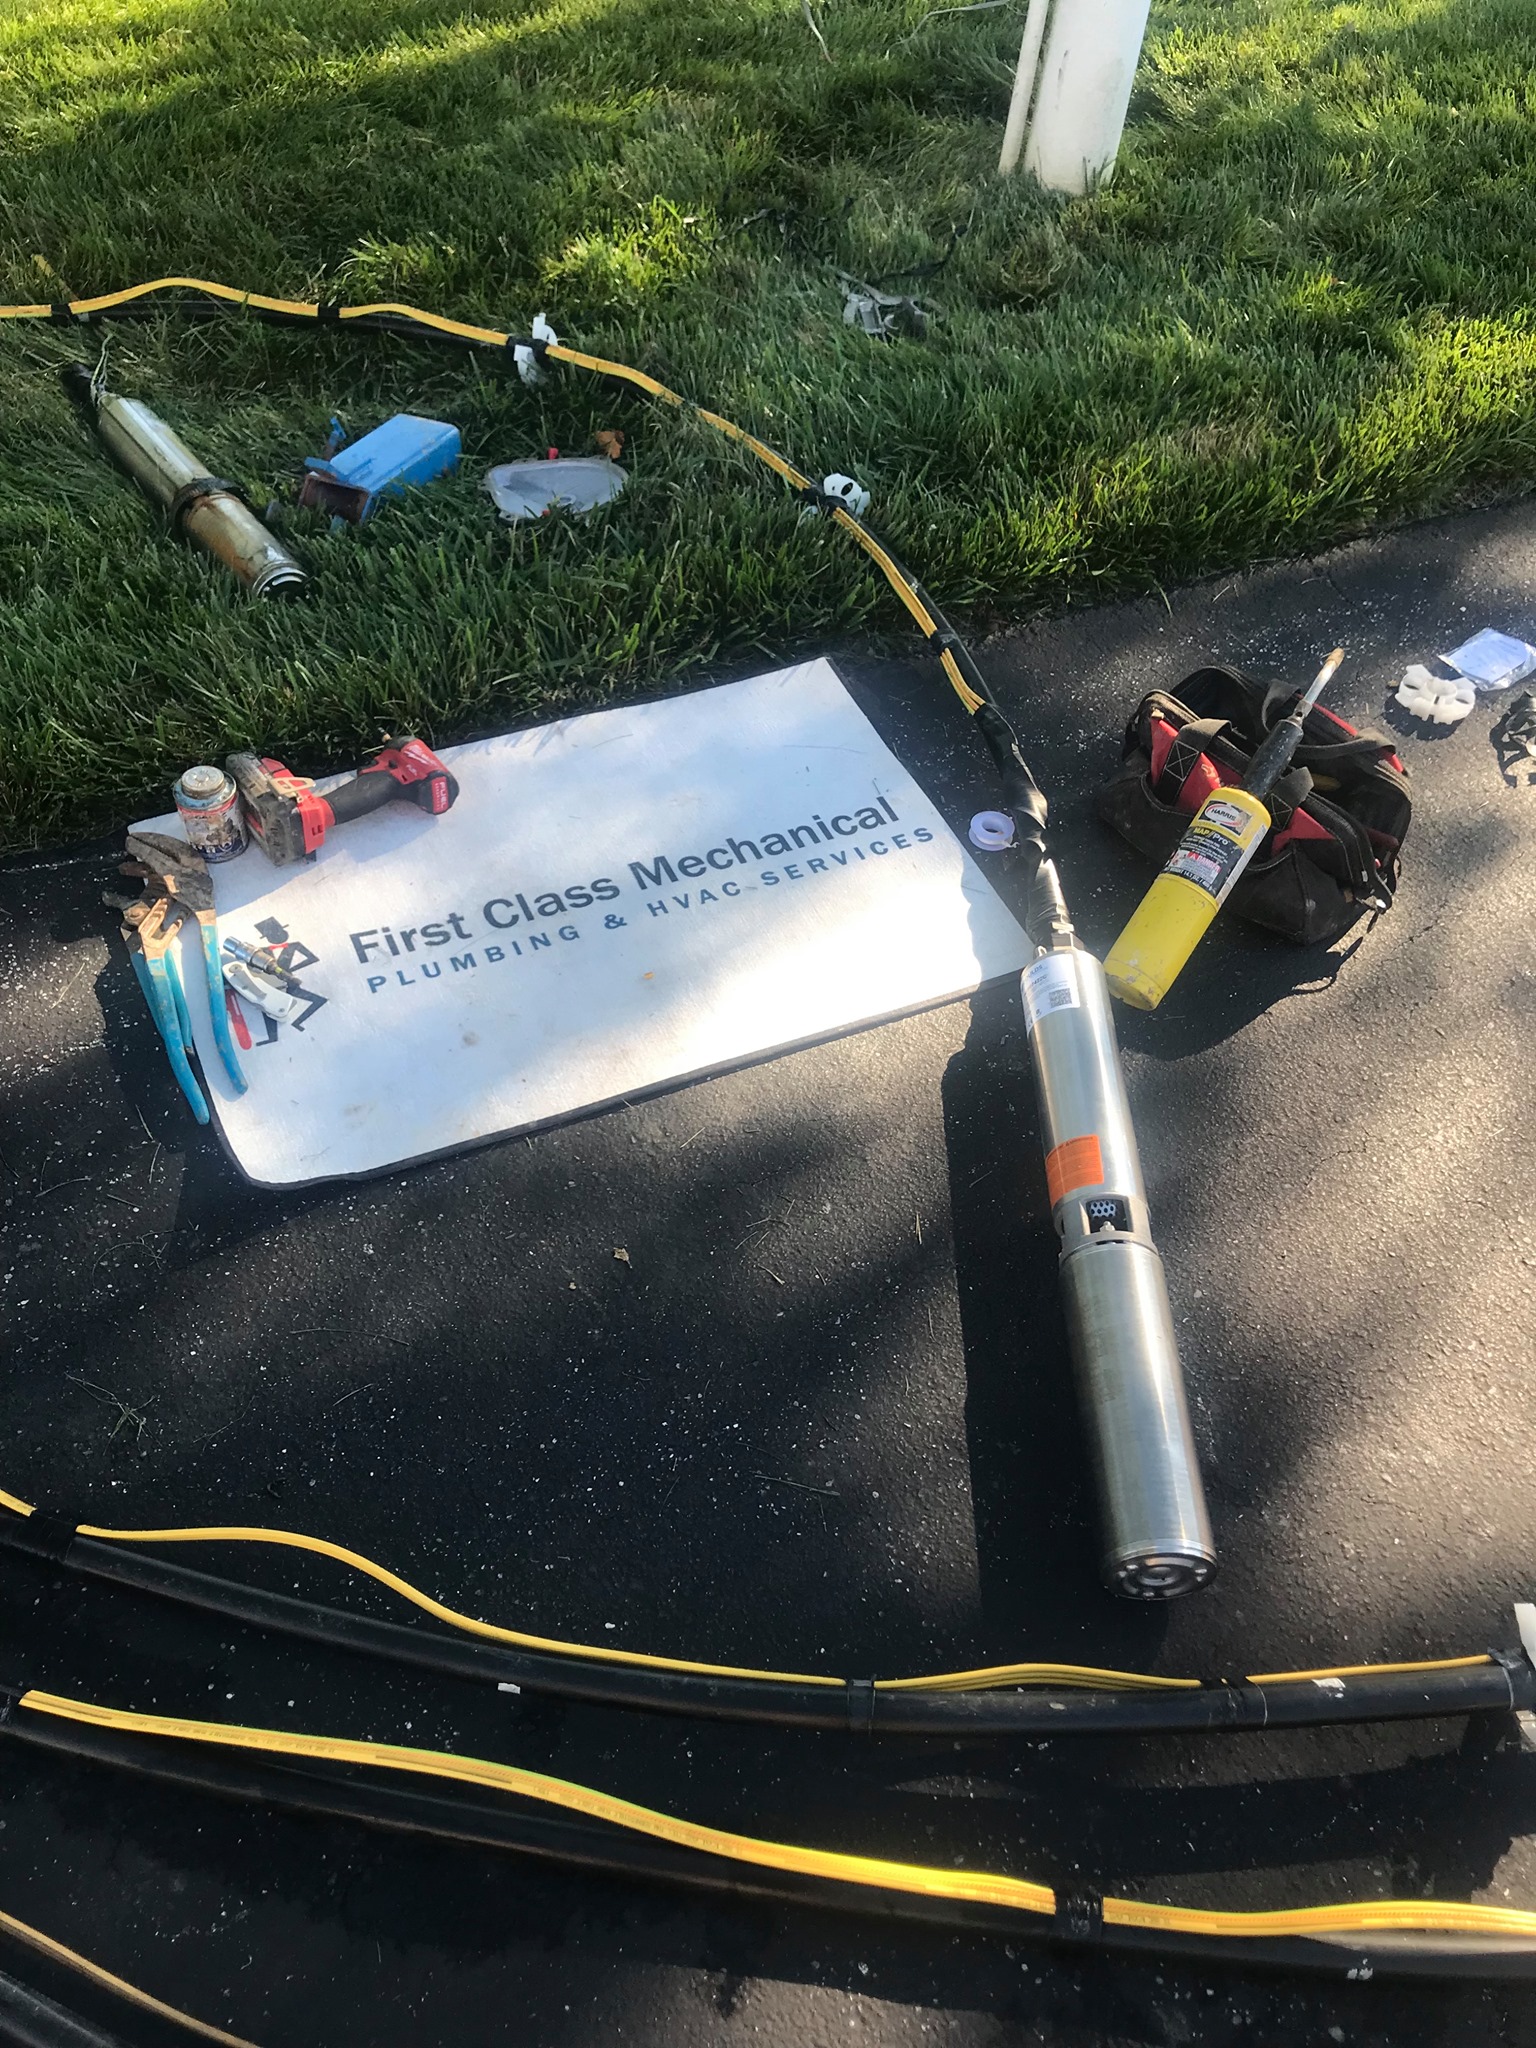 Dayton MD First Class Mechanical Emergency Well Pump Repair